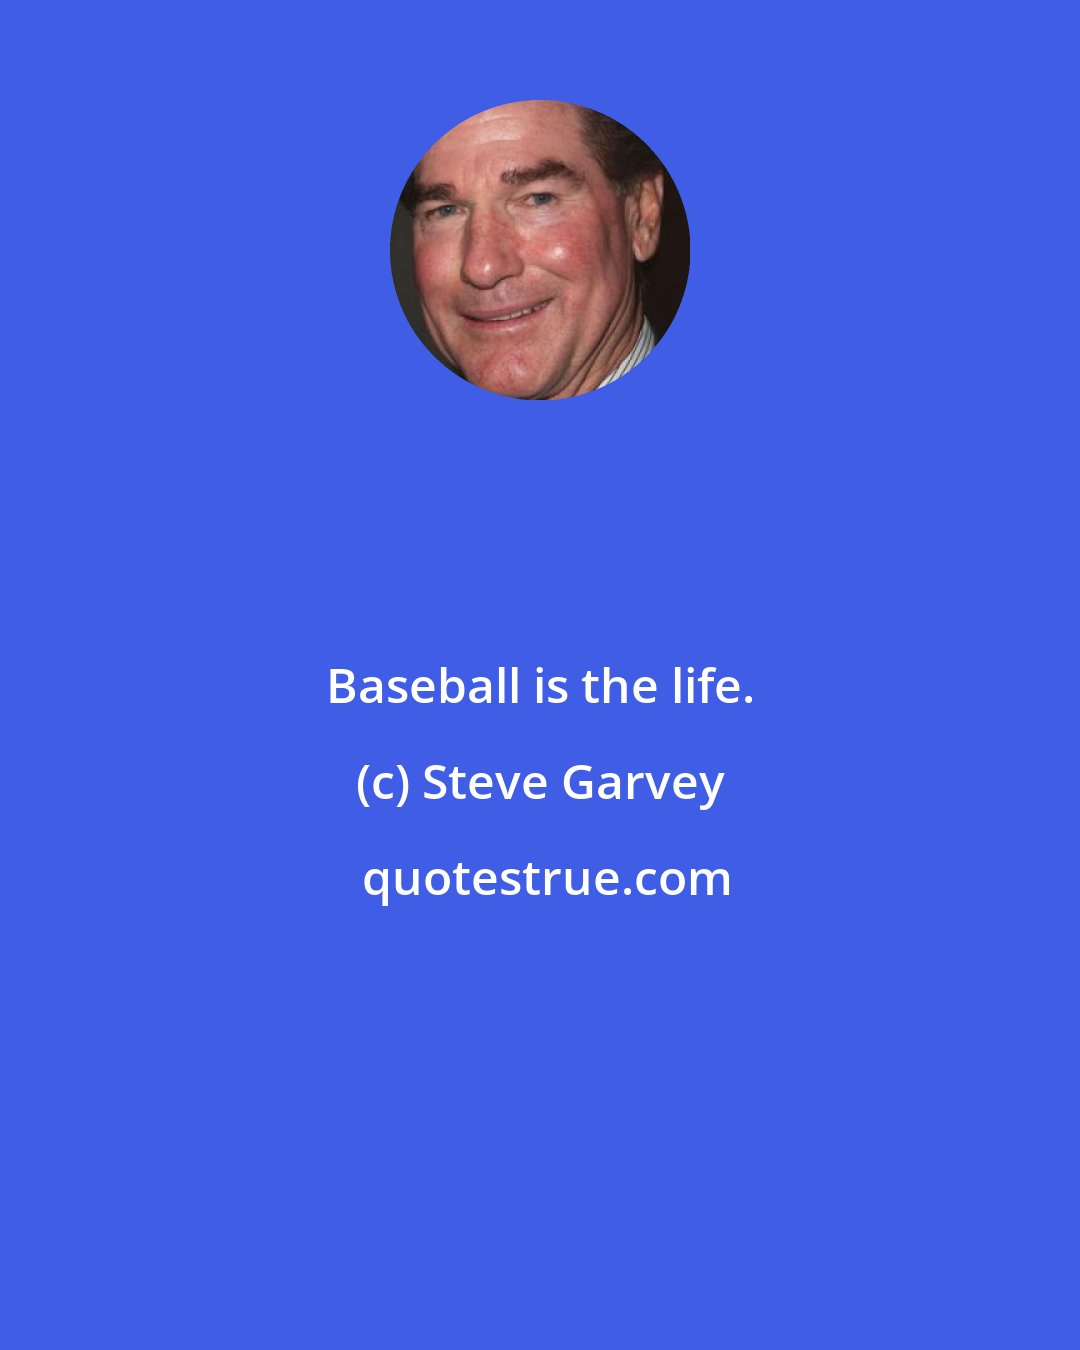 Steve Garvey: Baseball is the life.